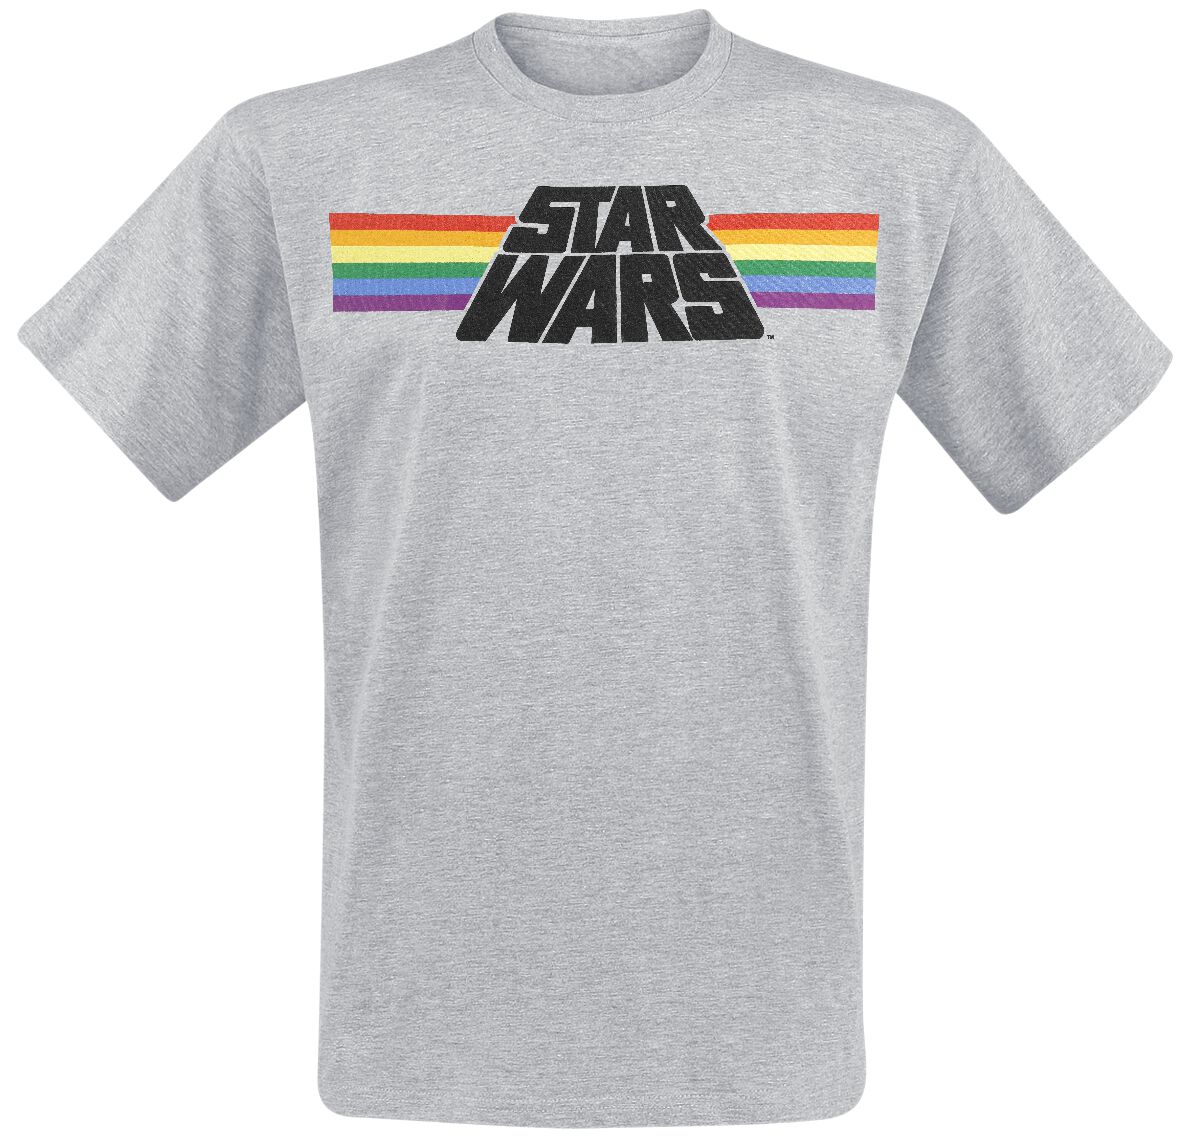 Star Wars T-Shirt - Classic Rainbow - M bis 3XL - für Männer - Größe XL - grau meliert  - Lizenzierter Fanartikel